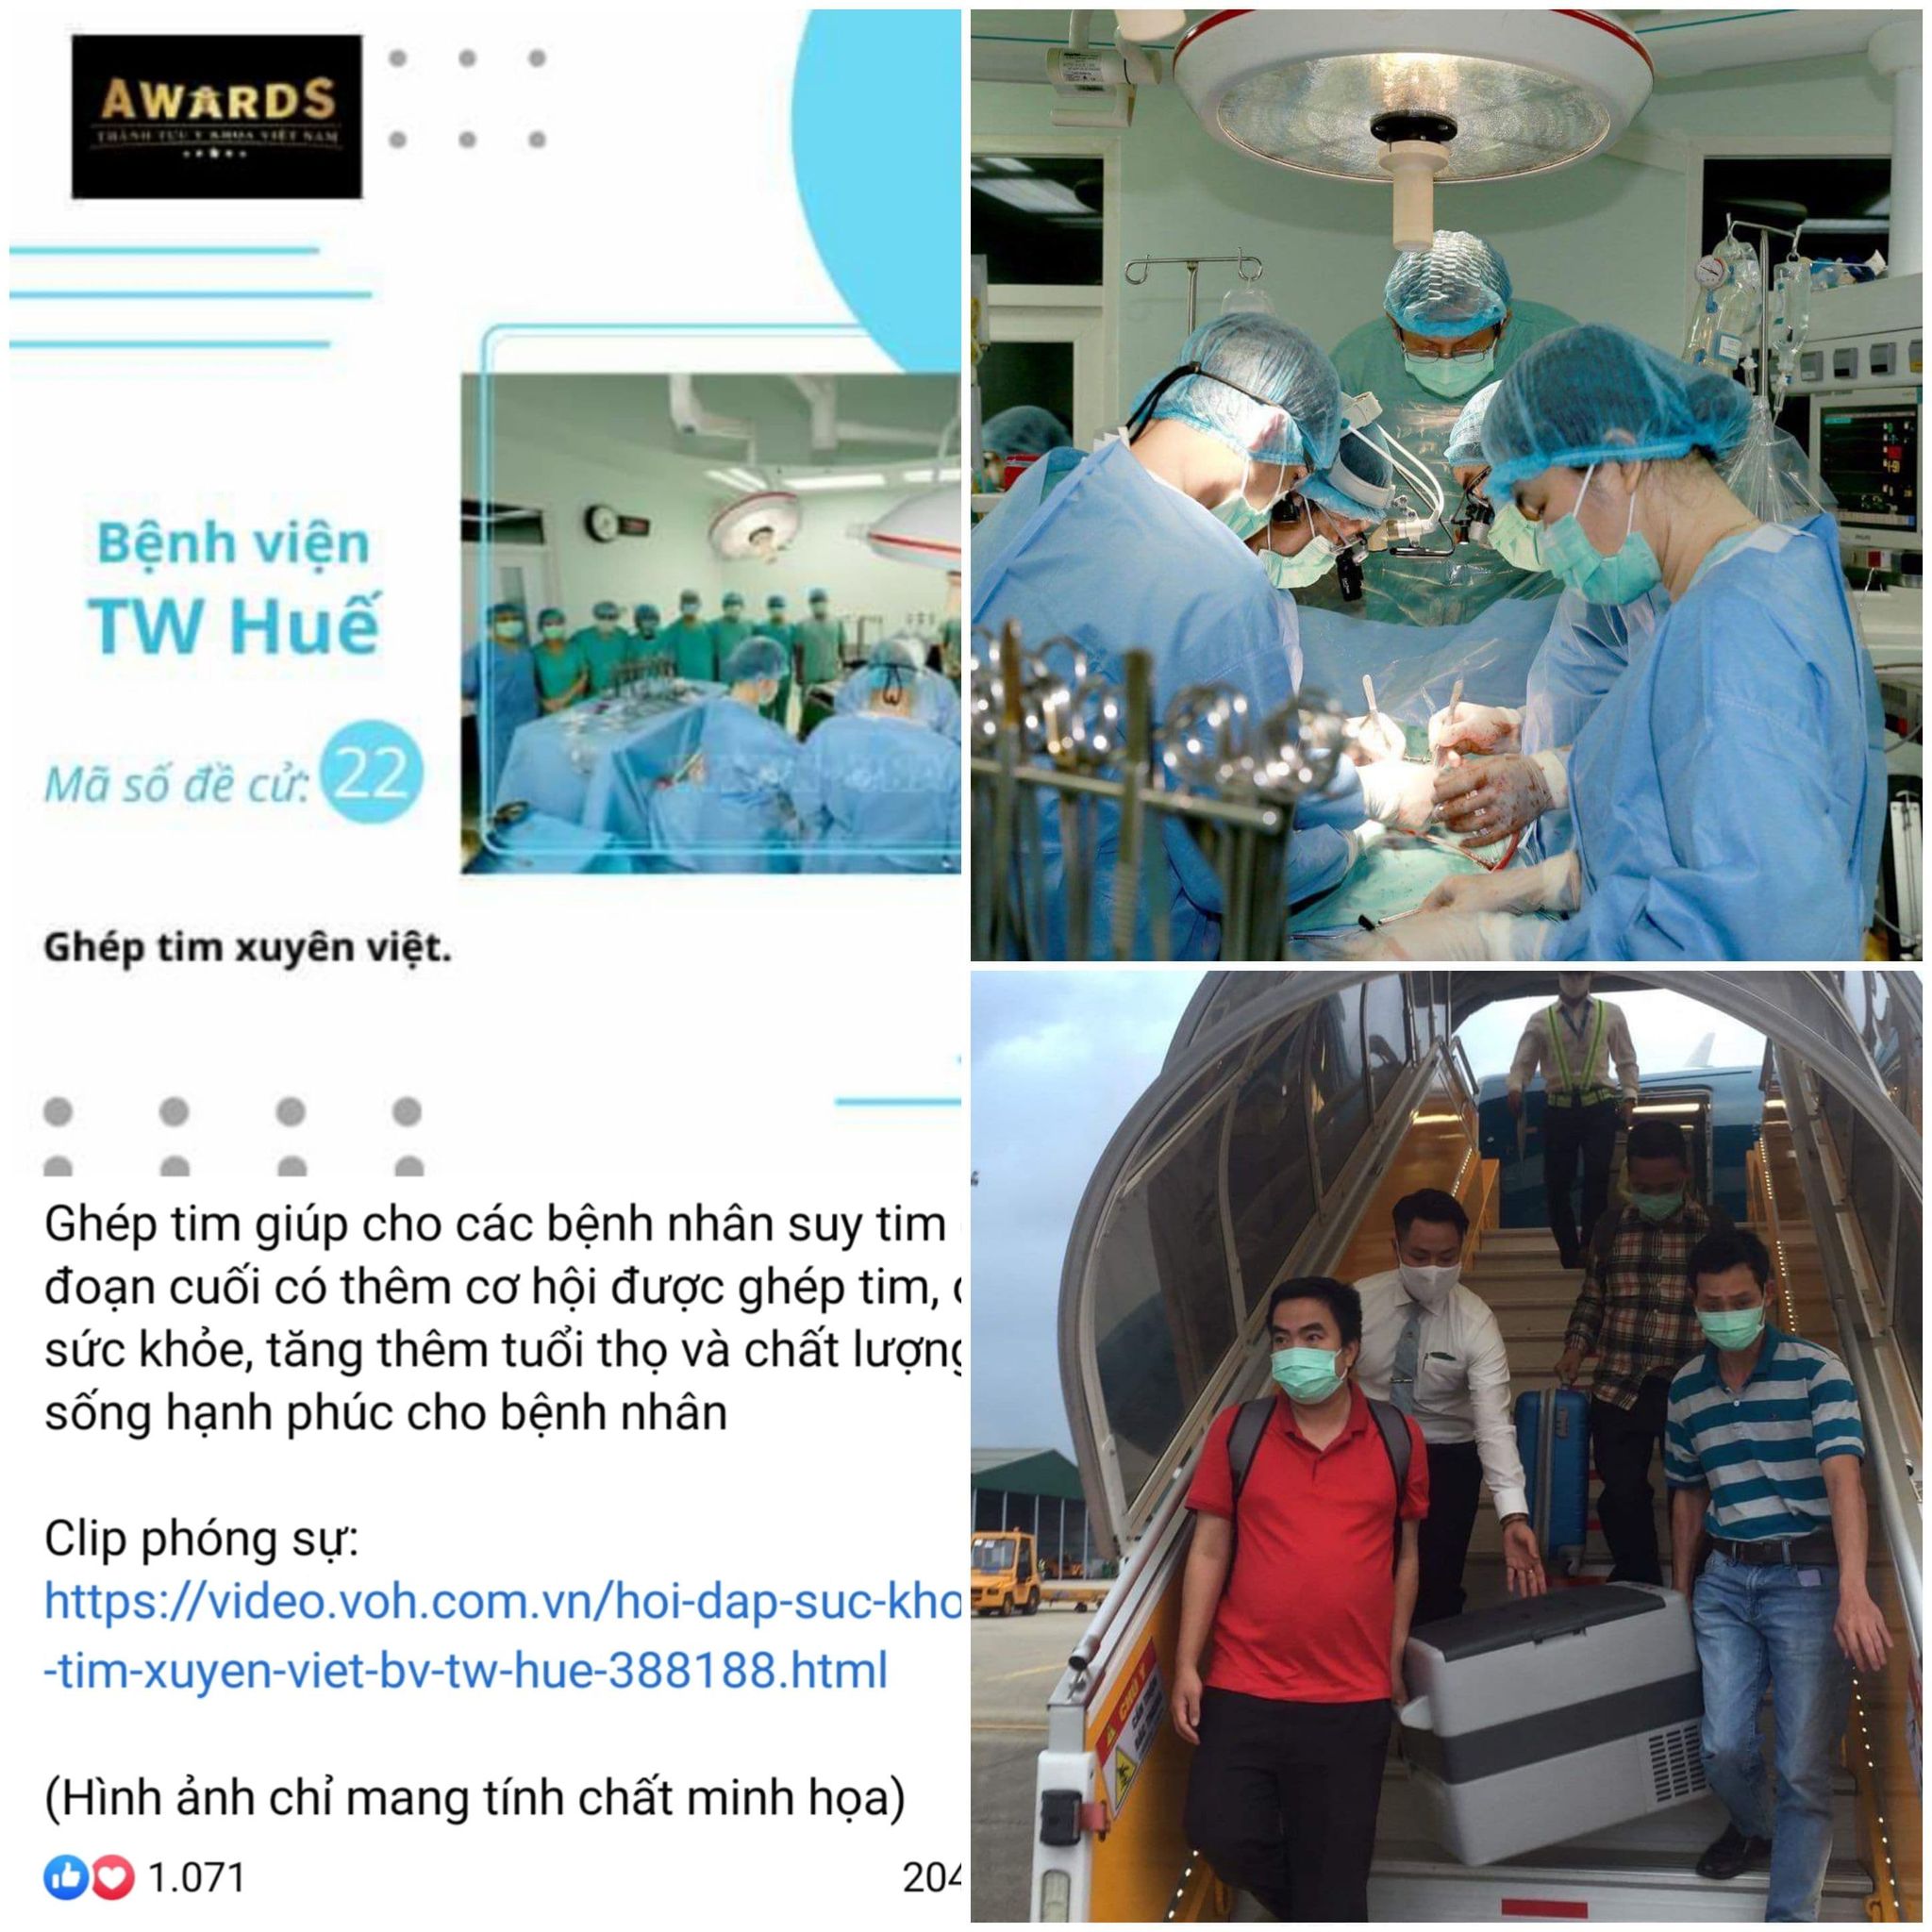 Hành trình ghép tim xuyên Việt của Bệnh viện Trung ương Huế lọt vào đề cử thành tựu y khoa Việt Nam năm 2020.